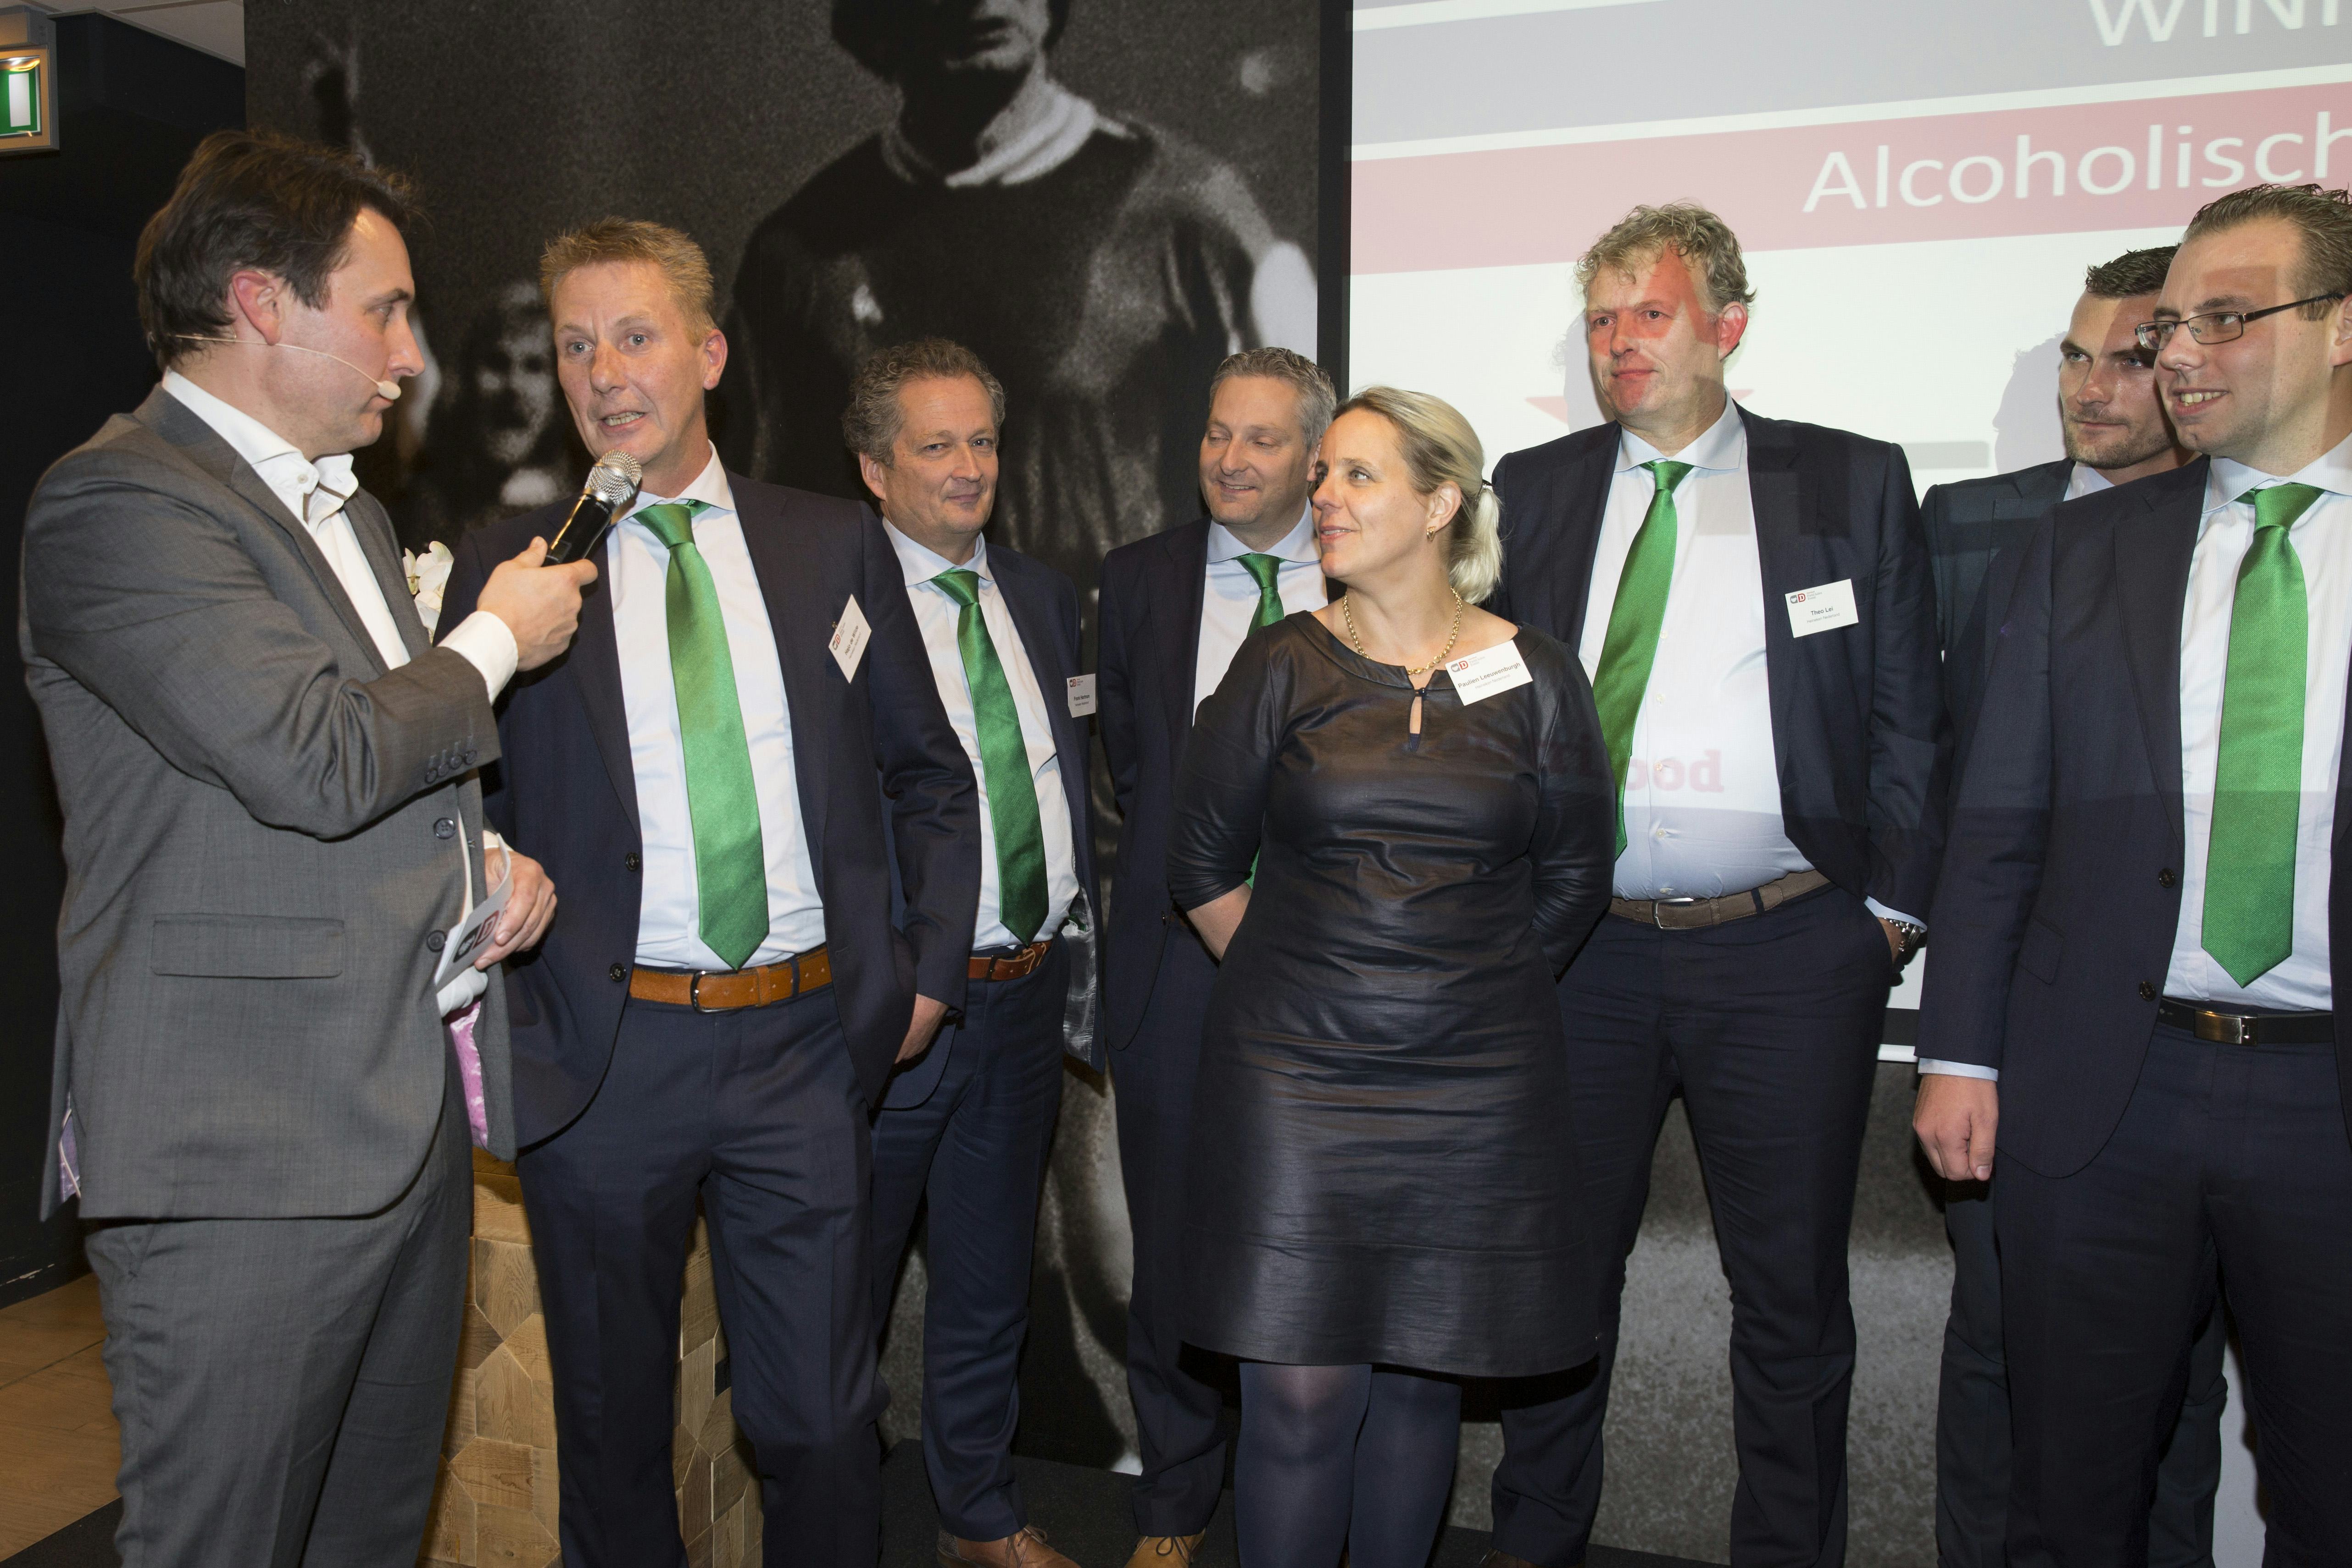 Winnaar Alcoholische dranken: Heineken Nederland